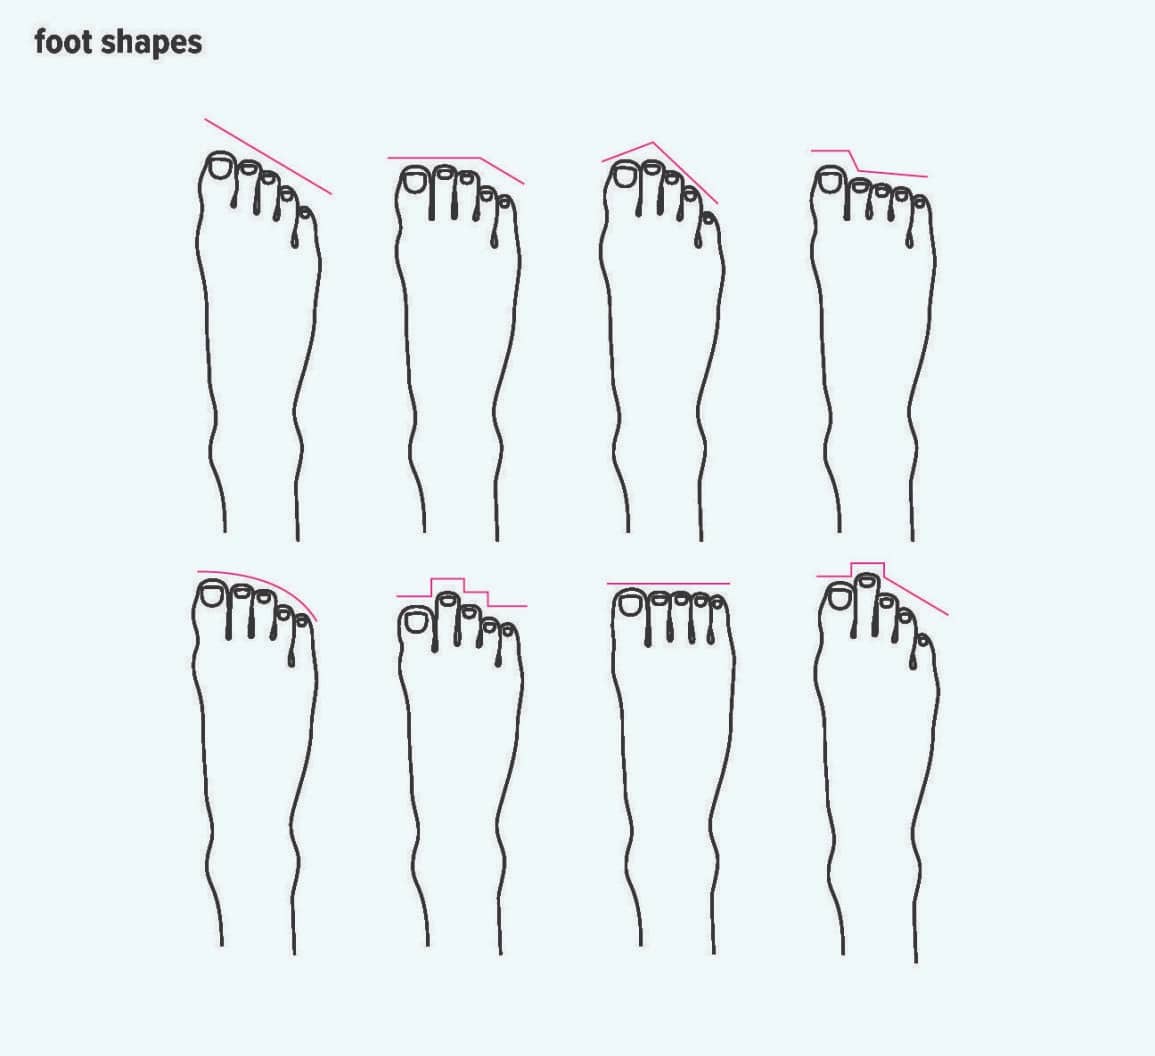 Dáng chân theo độ dài các ngón chân